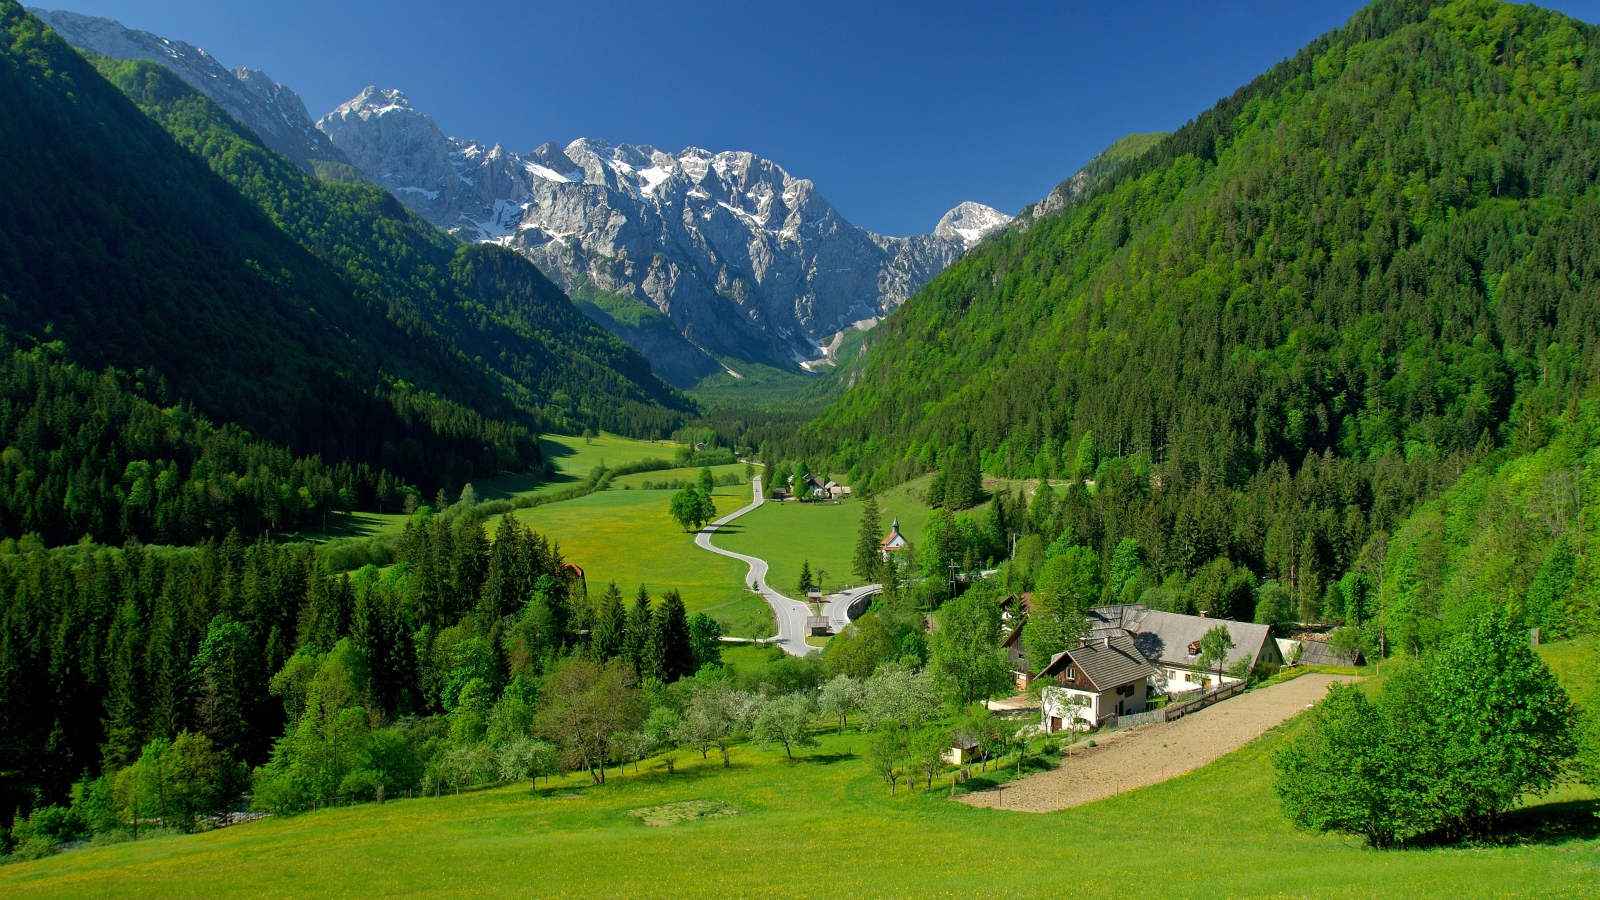 Spring Alpine Valley Mountains Fields Landscape Wallpaper